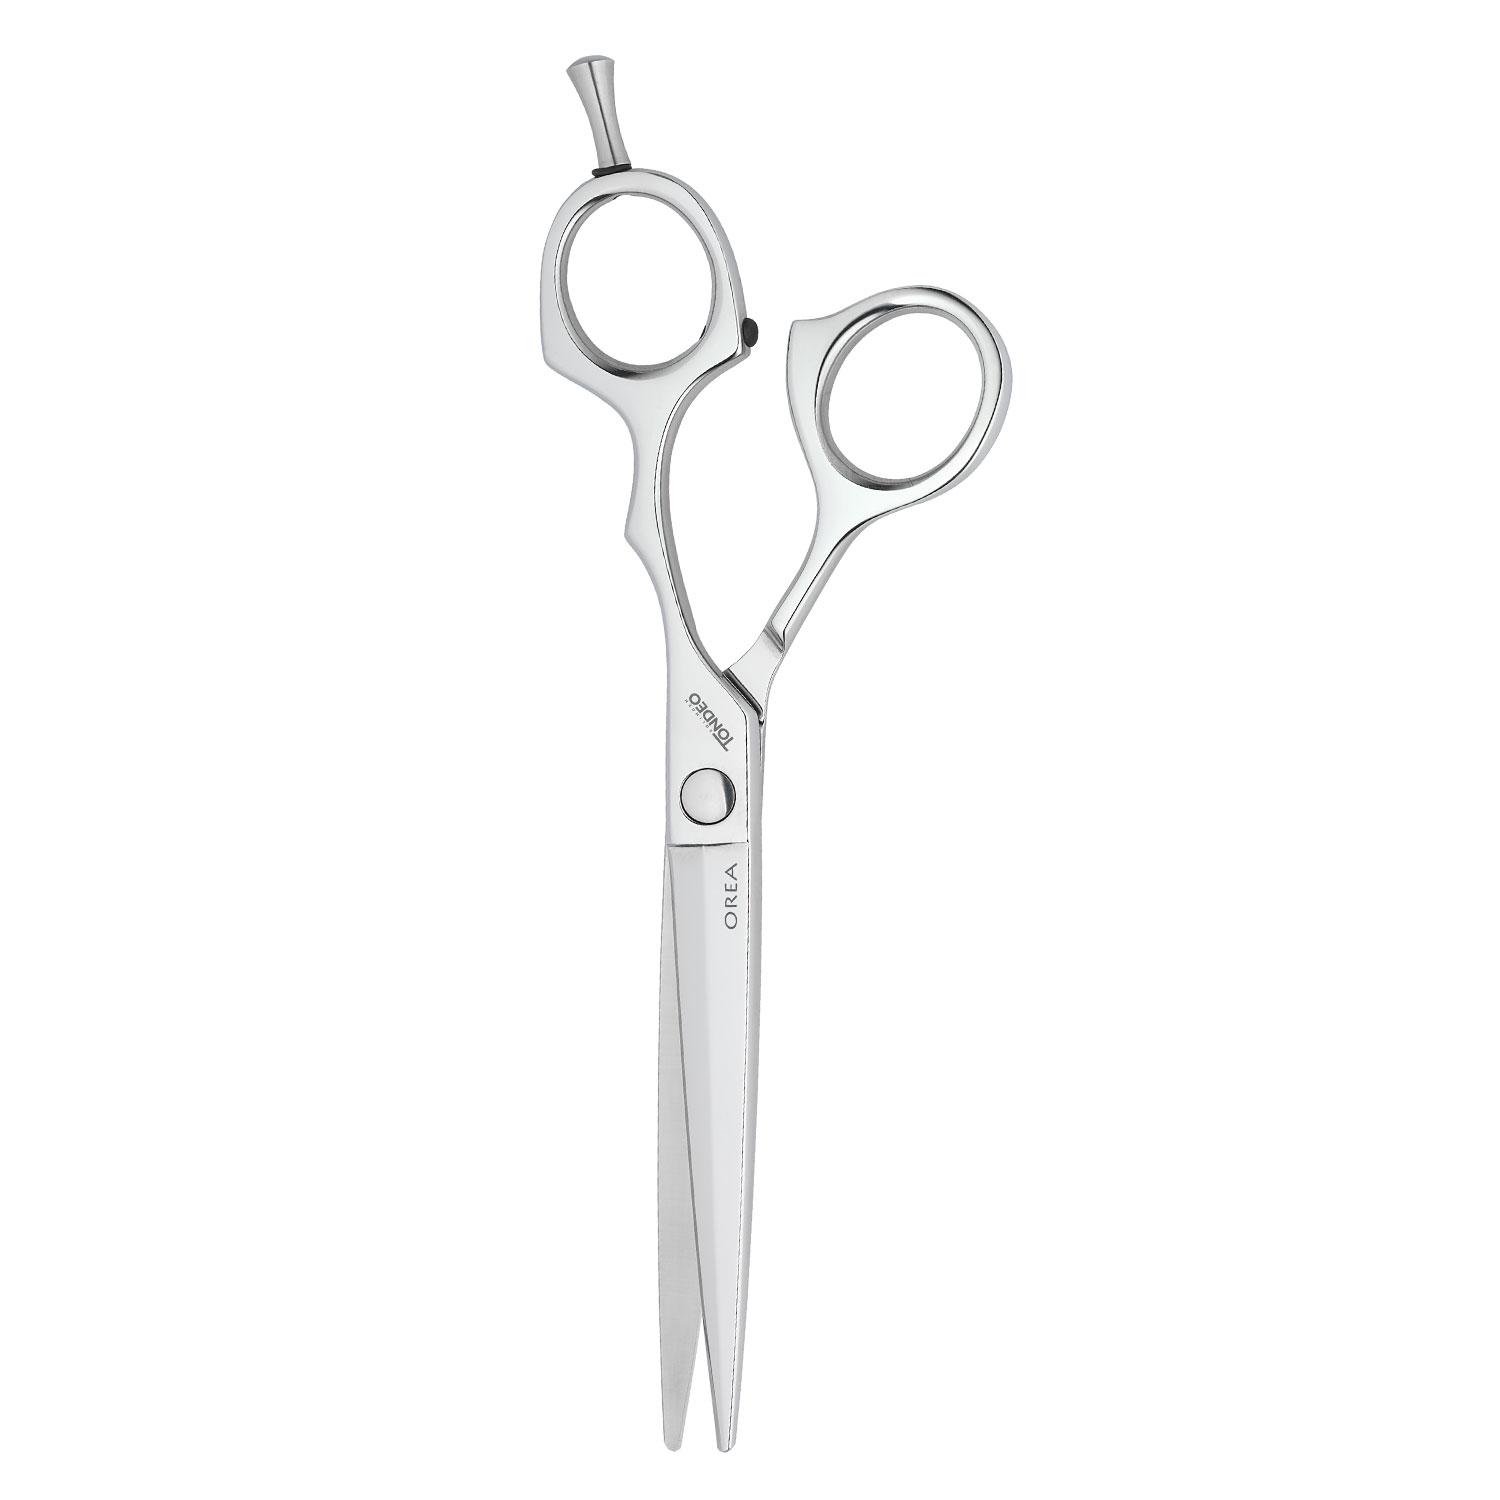 Tondeo Scissors - Orea Offset Scissors 5.5"